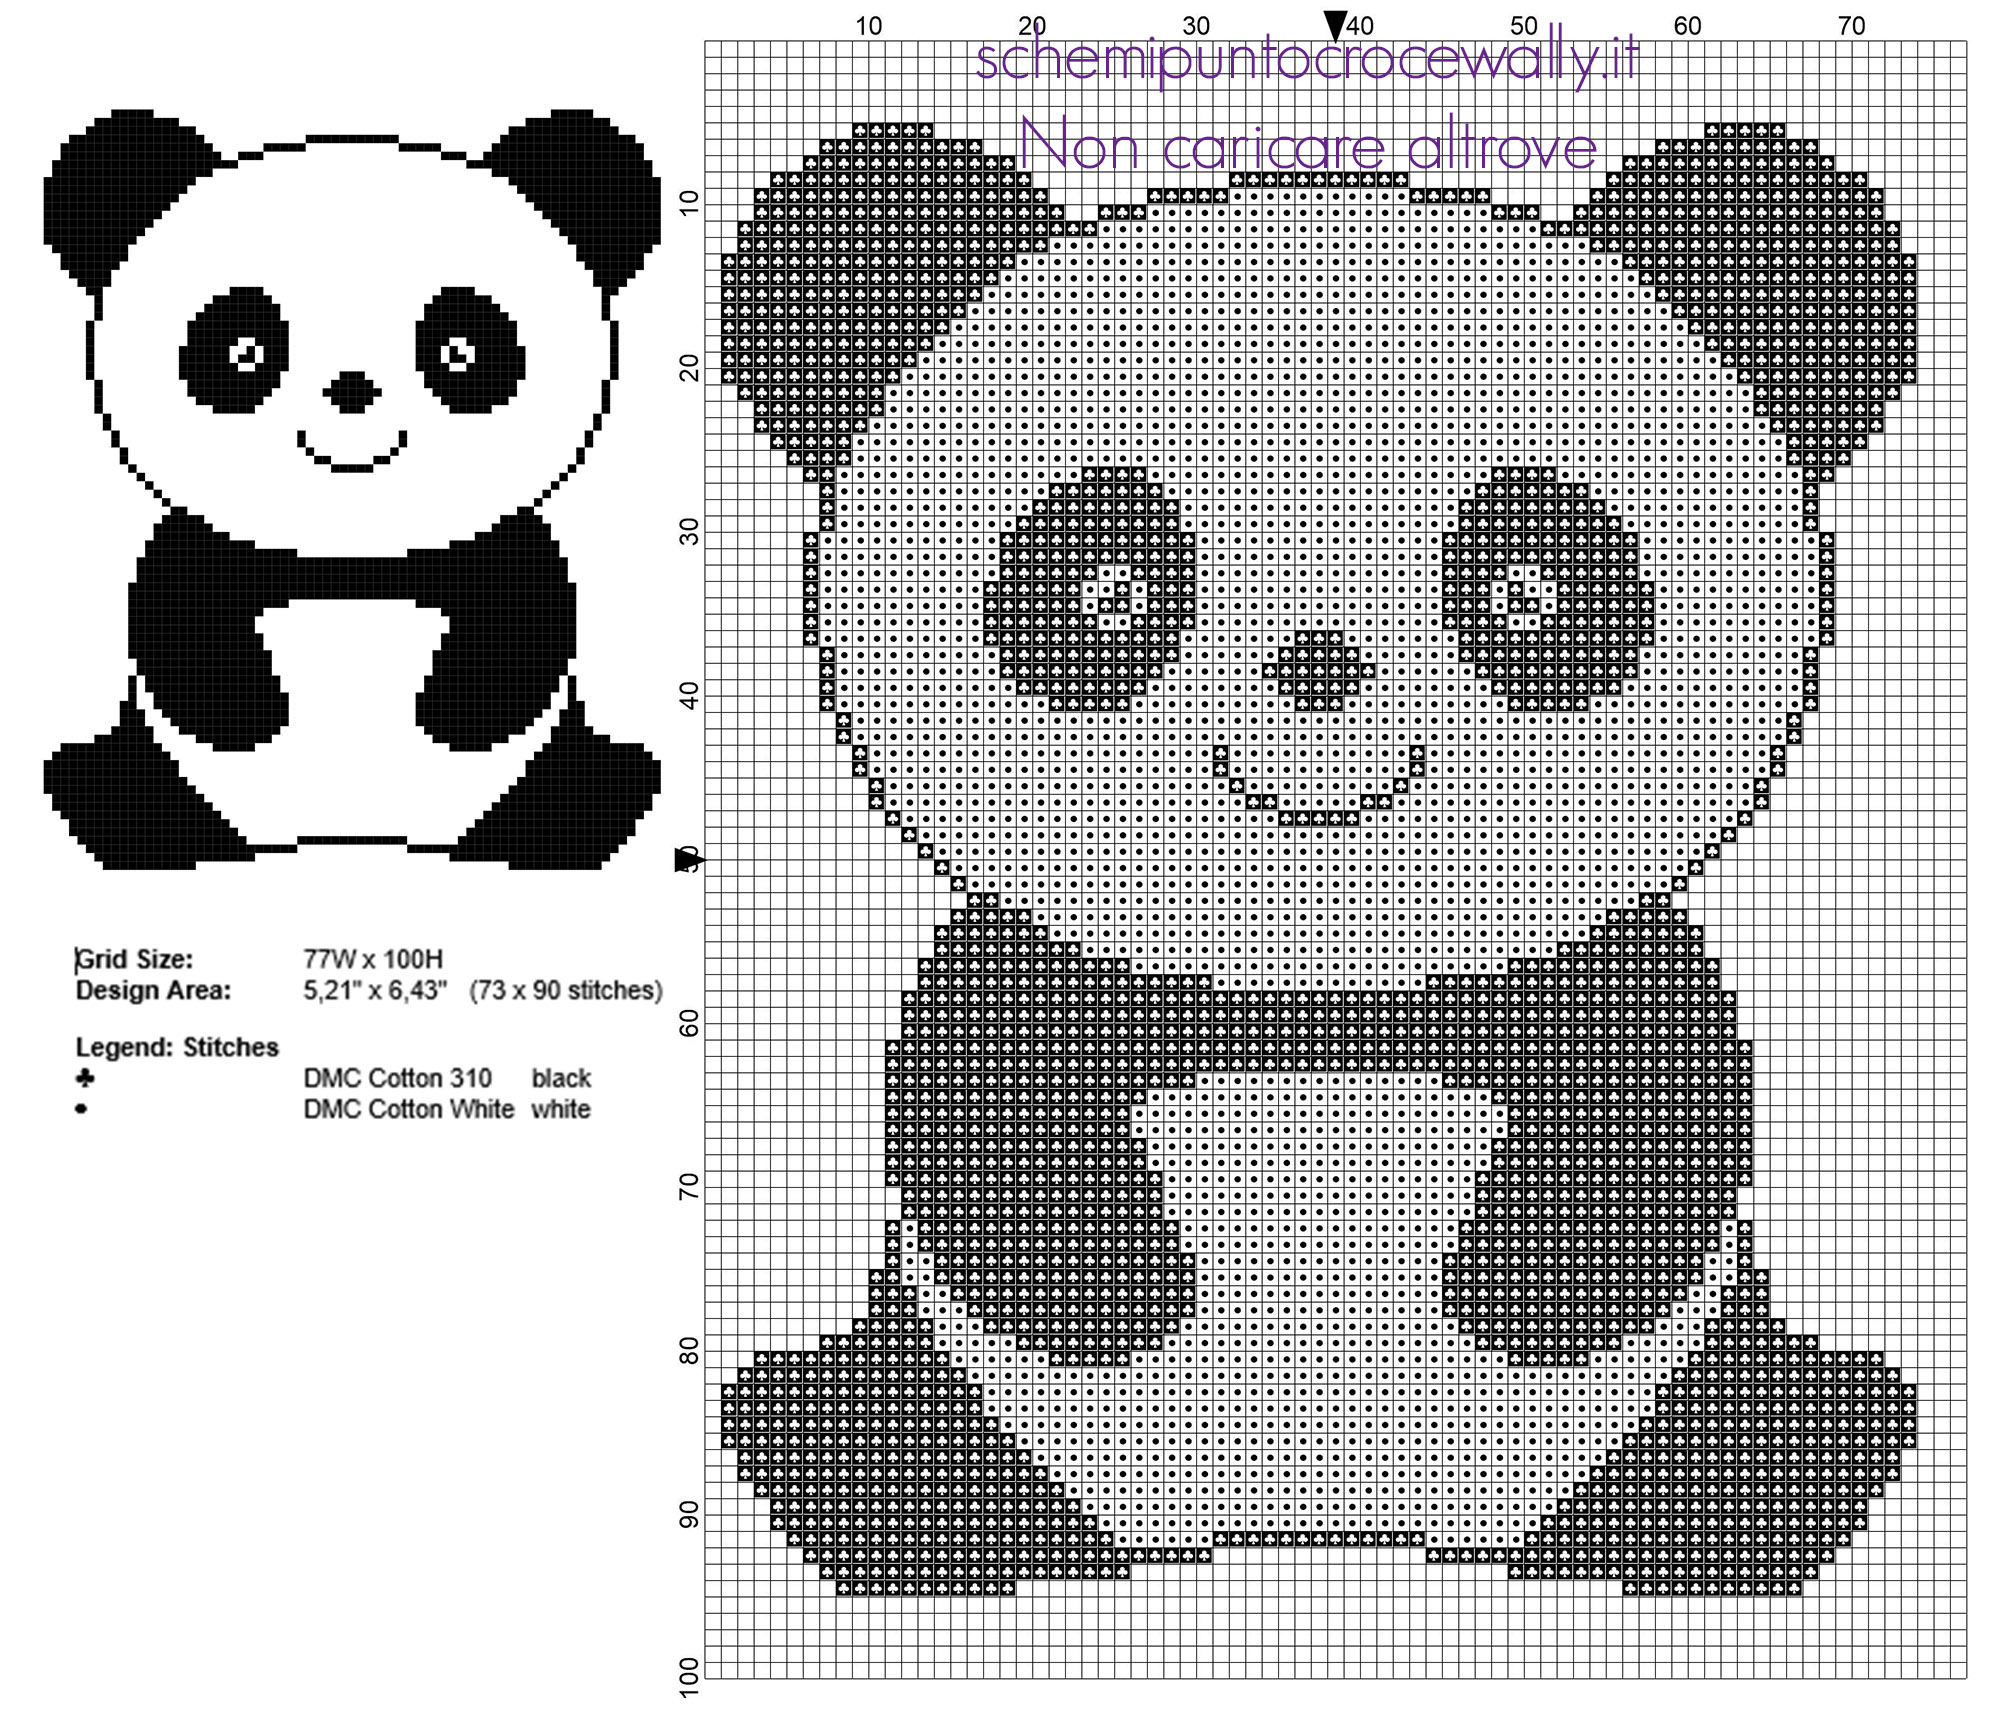 Un baby panda animali per bambini schema punto croce 73 x 90 crocette dimensione 2 colori filati DMC